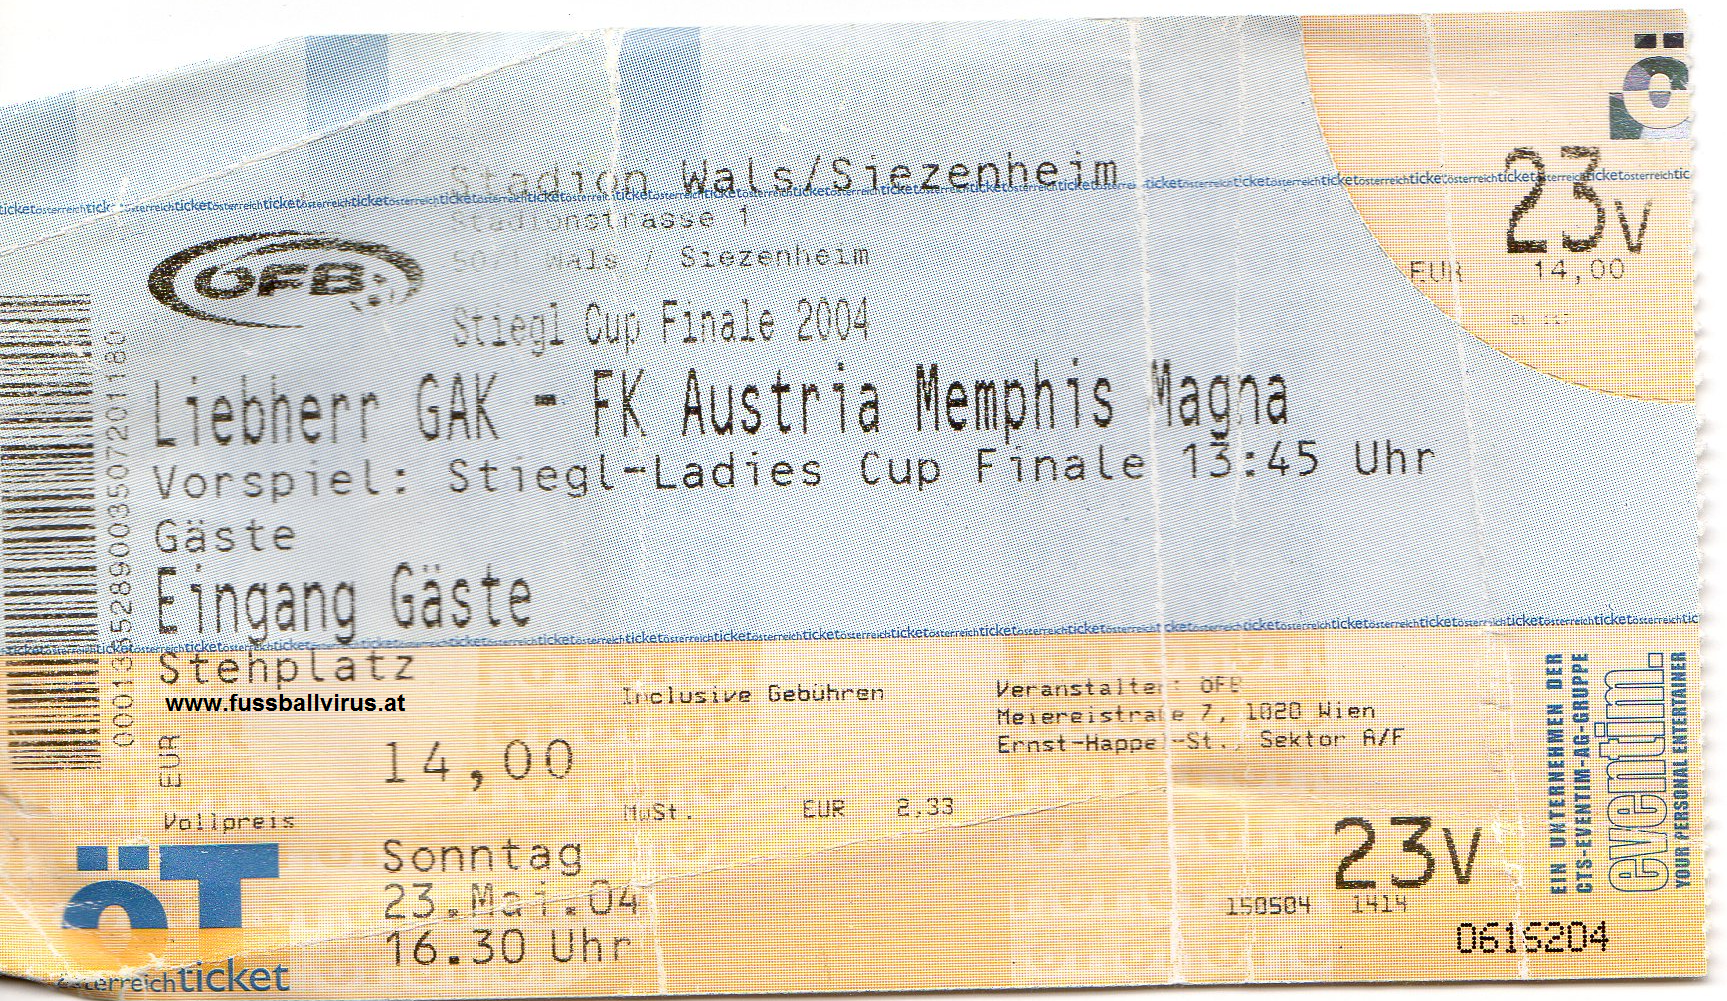 23.5. GAK - FK Austria Wien